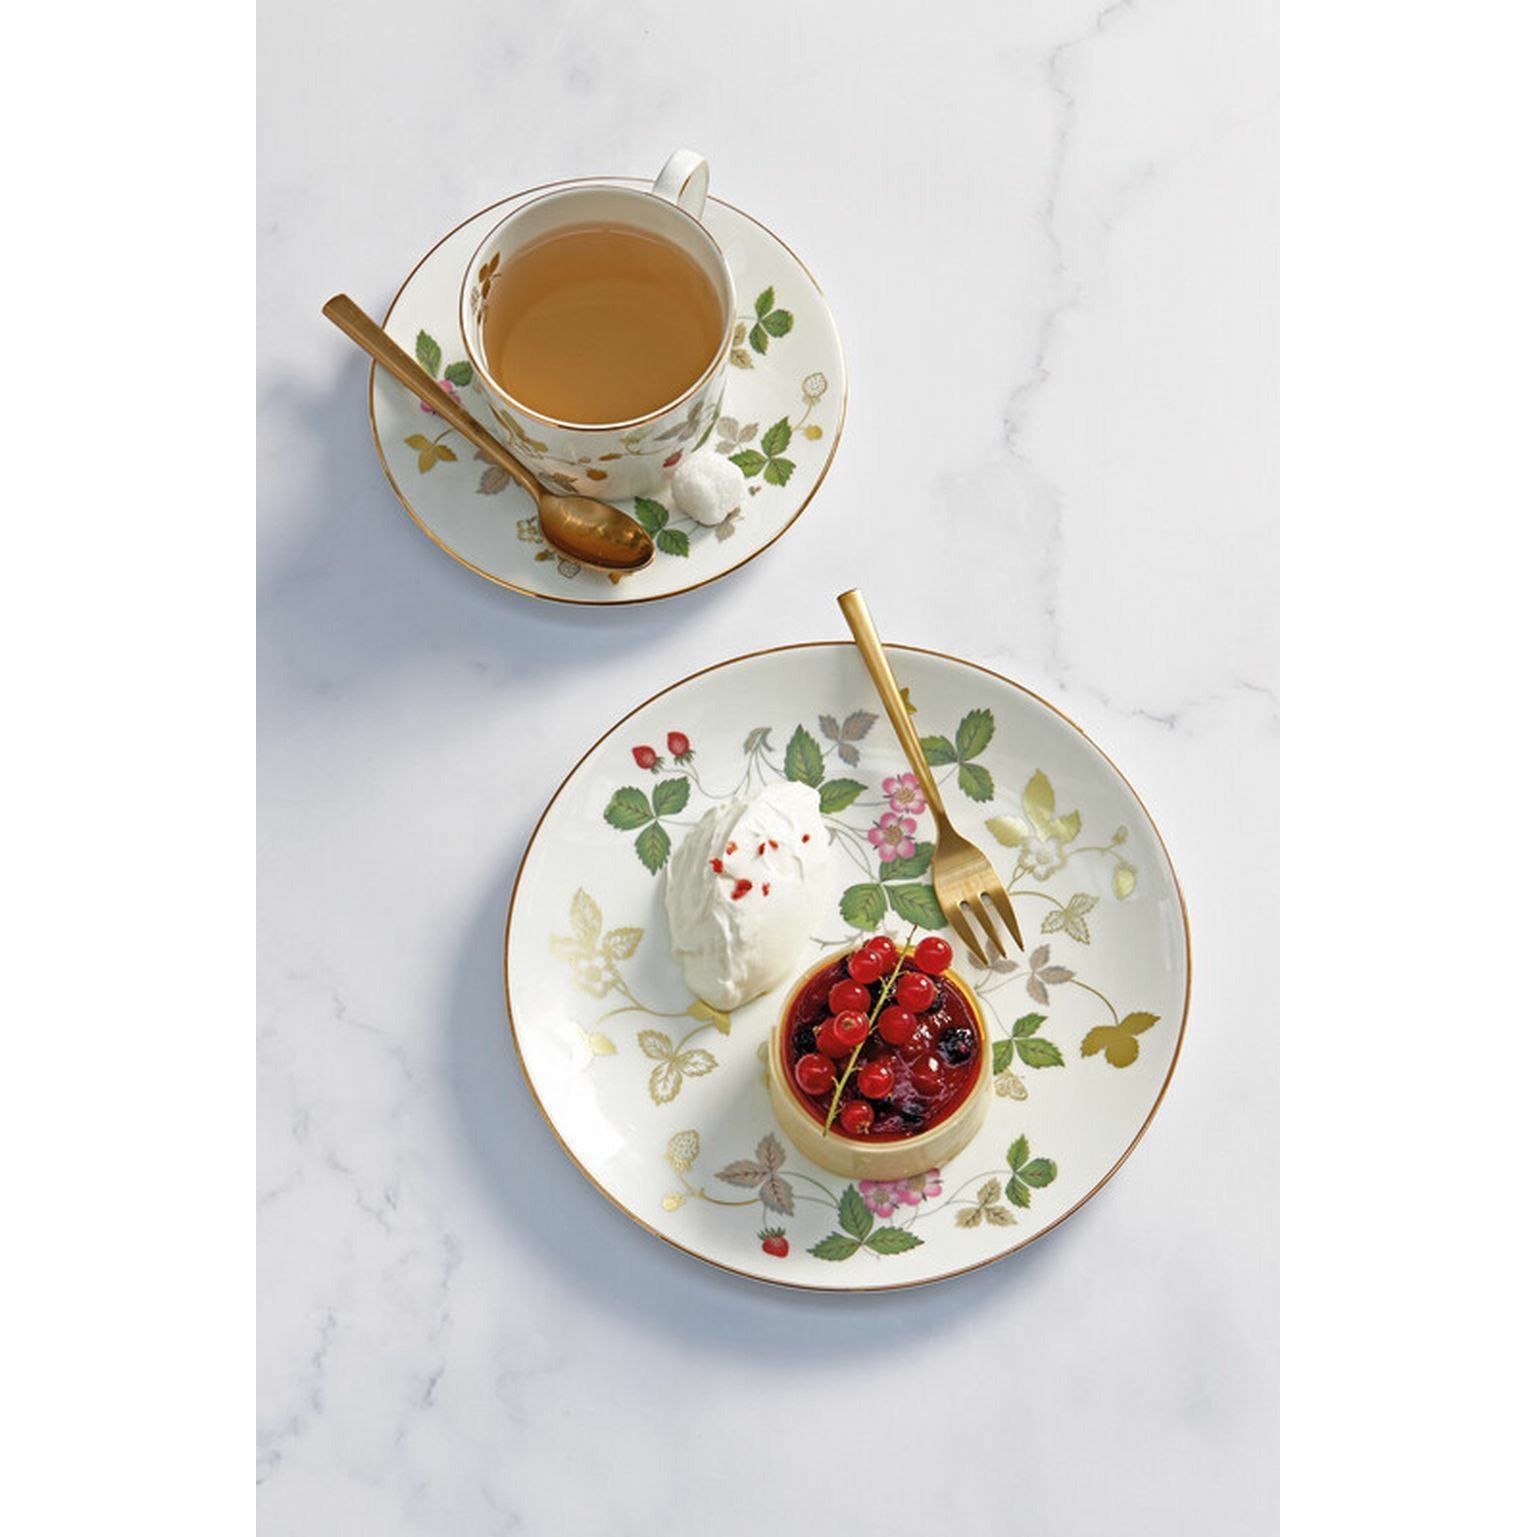 韦奇伍德野草莓茶杯和碟